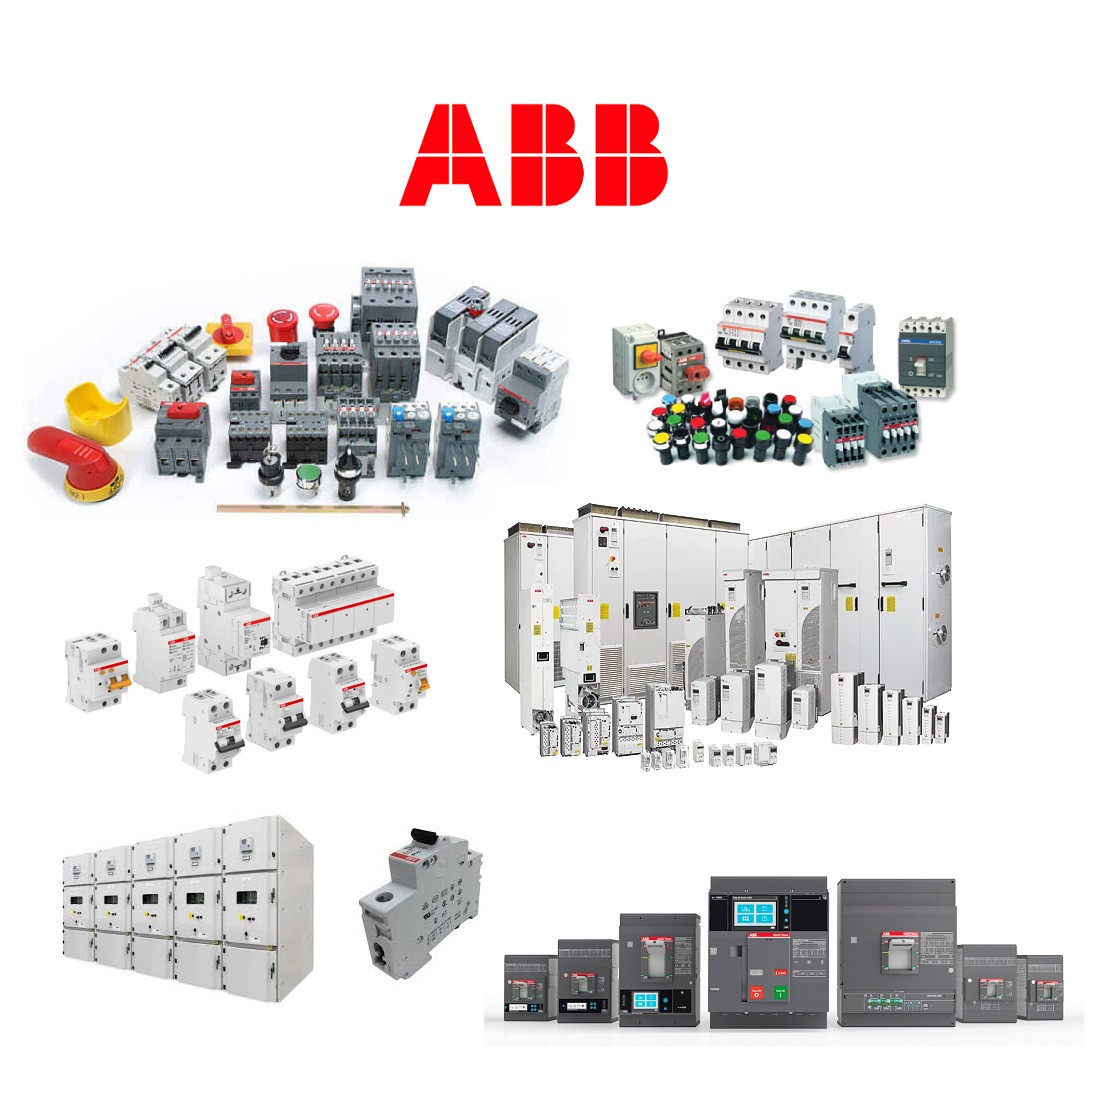 Abb 1SFA611605R1201 MCBH-101  Contact Block